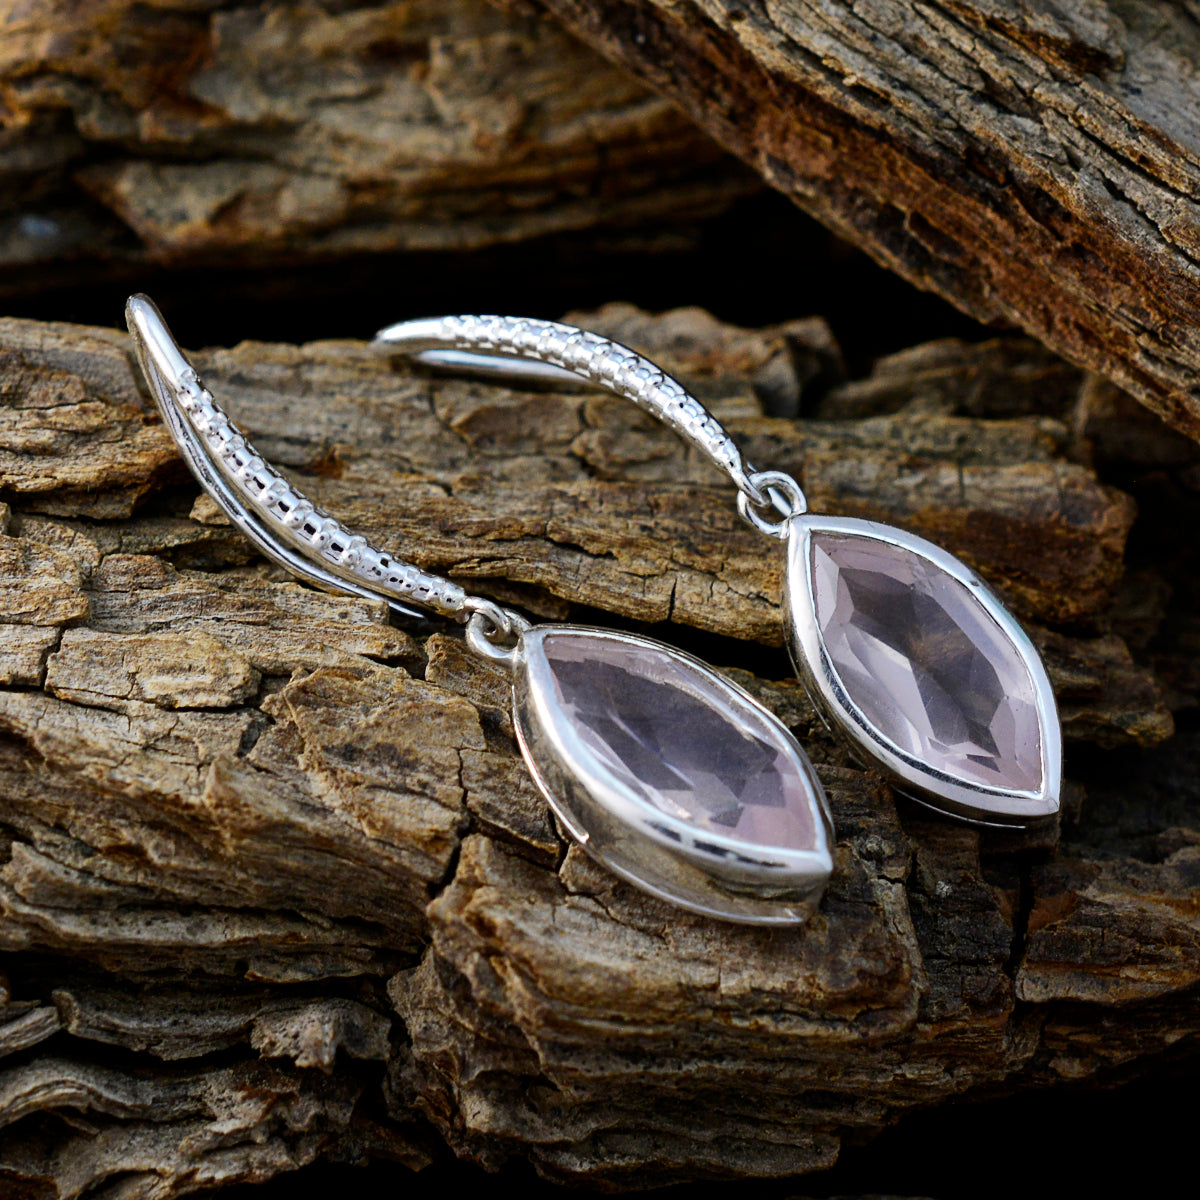 Riyo Beauteous Sterling Silver Earring For Damsel Rose Quartz Earring Bezel Setting Pink Earring Dangle Earring